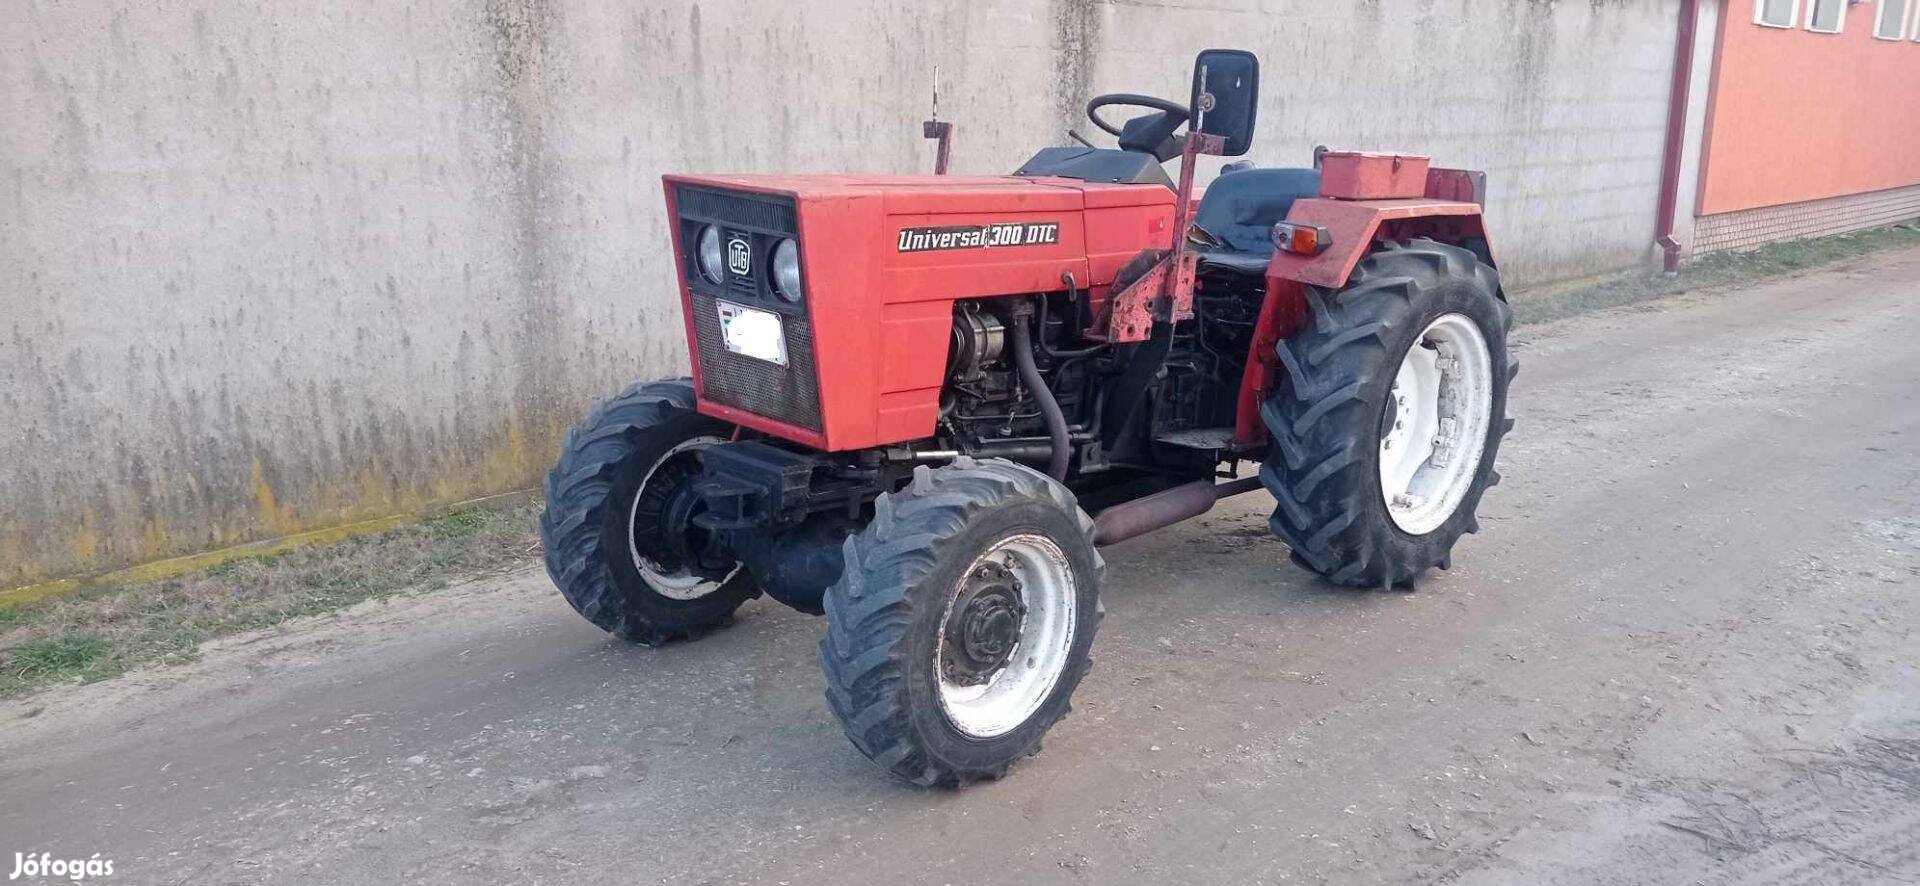 UTB 300 DTC traktor 4x4